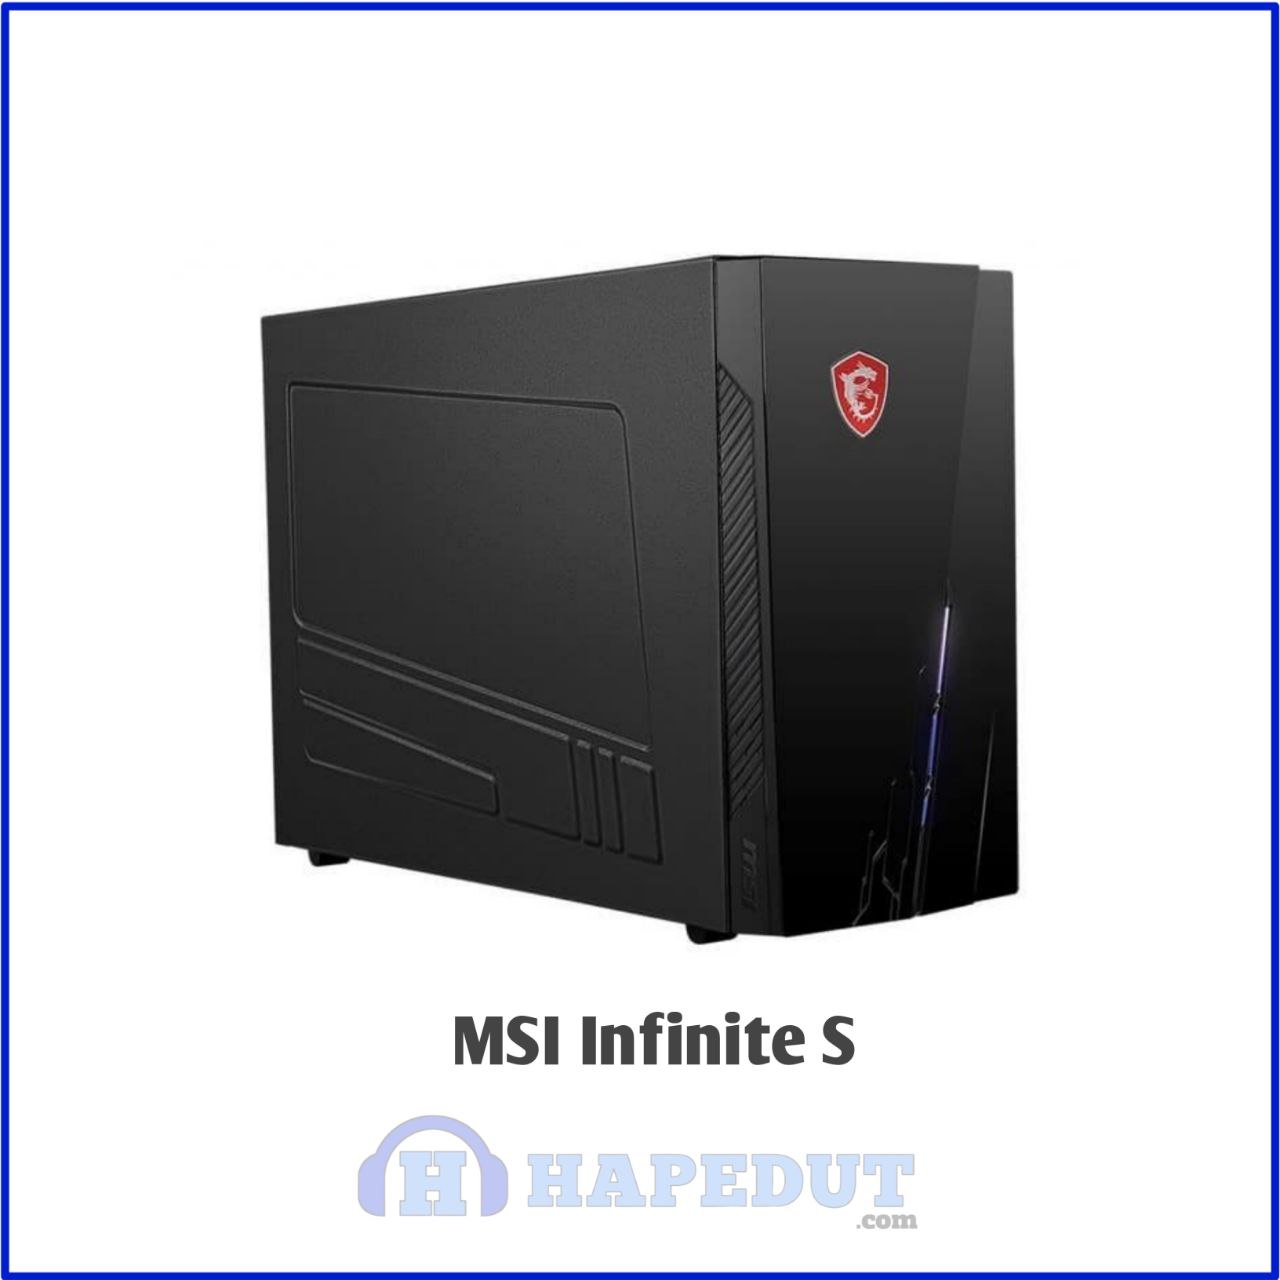 MSI Infinite S : Hapedut